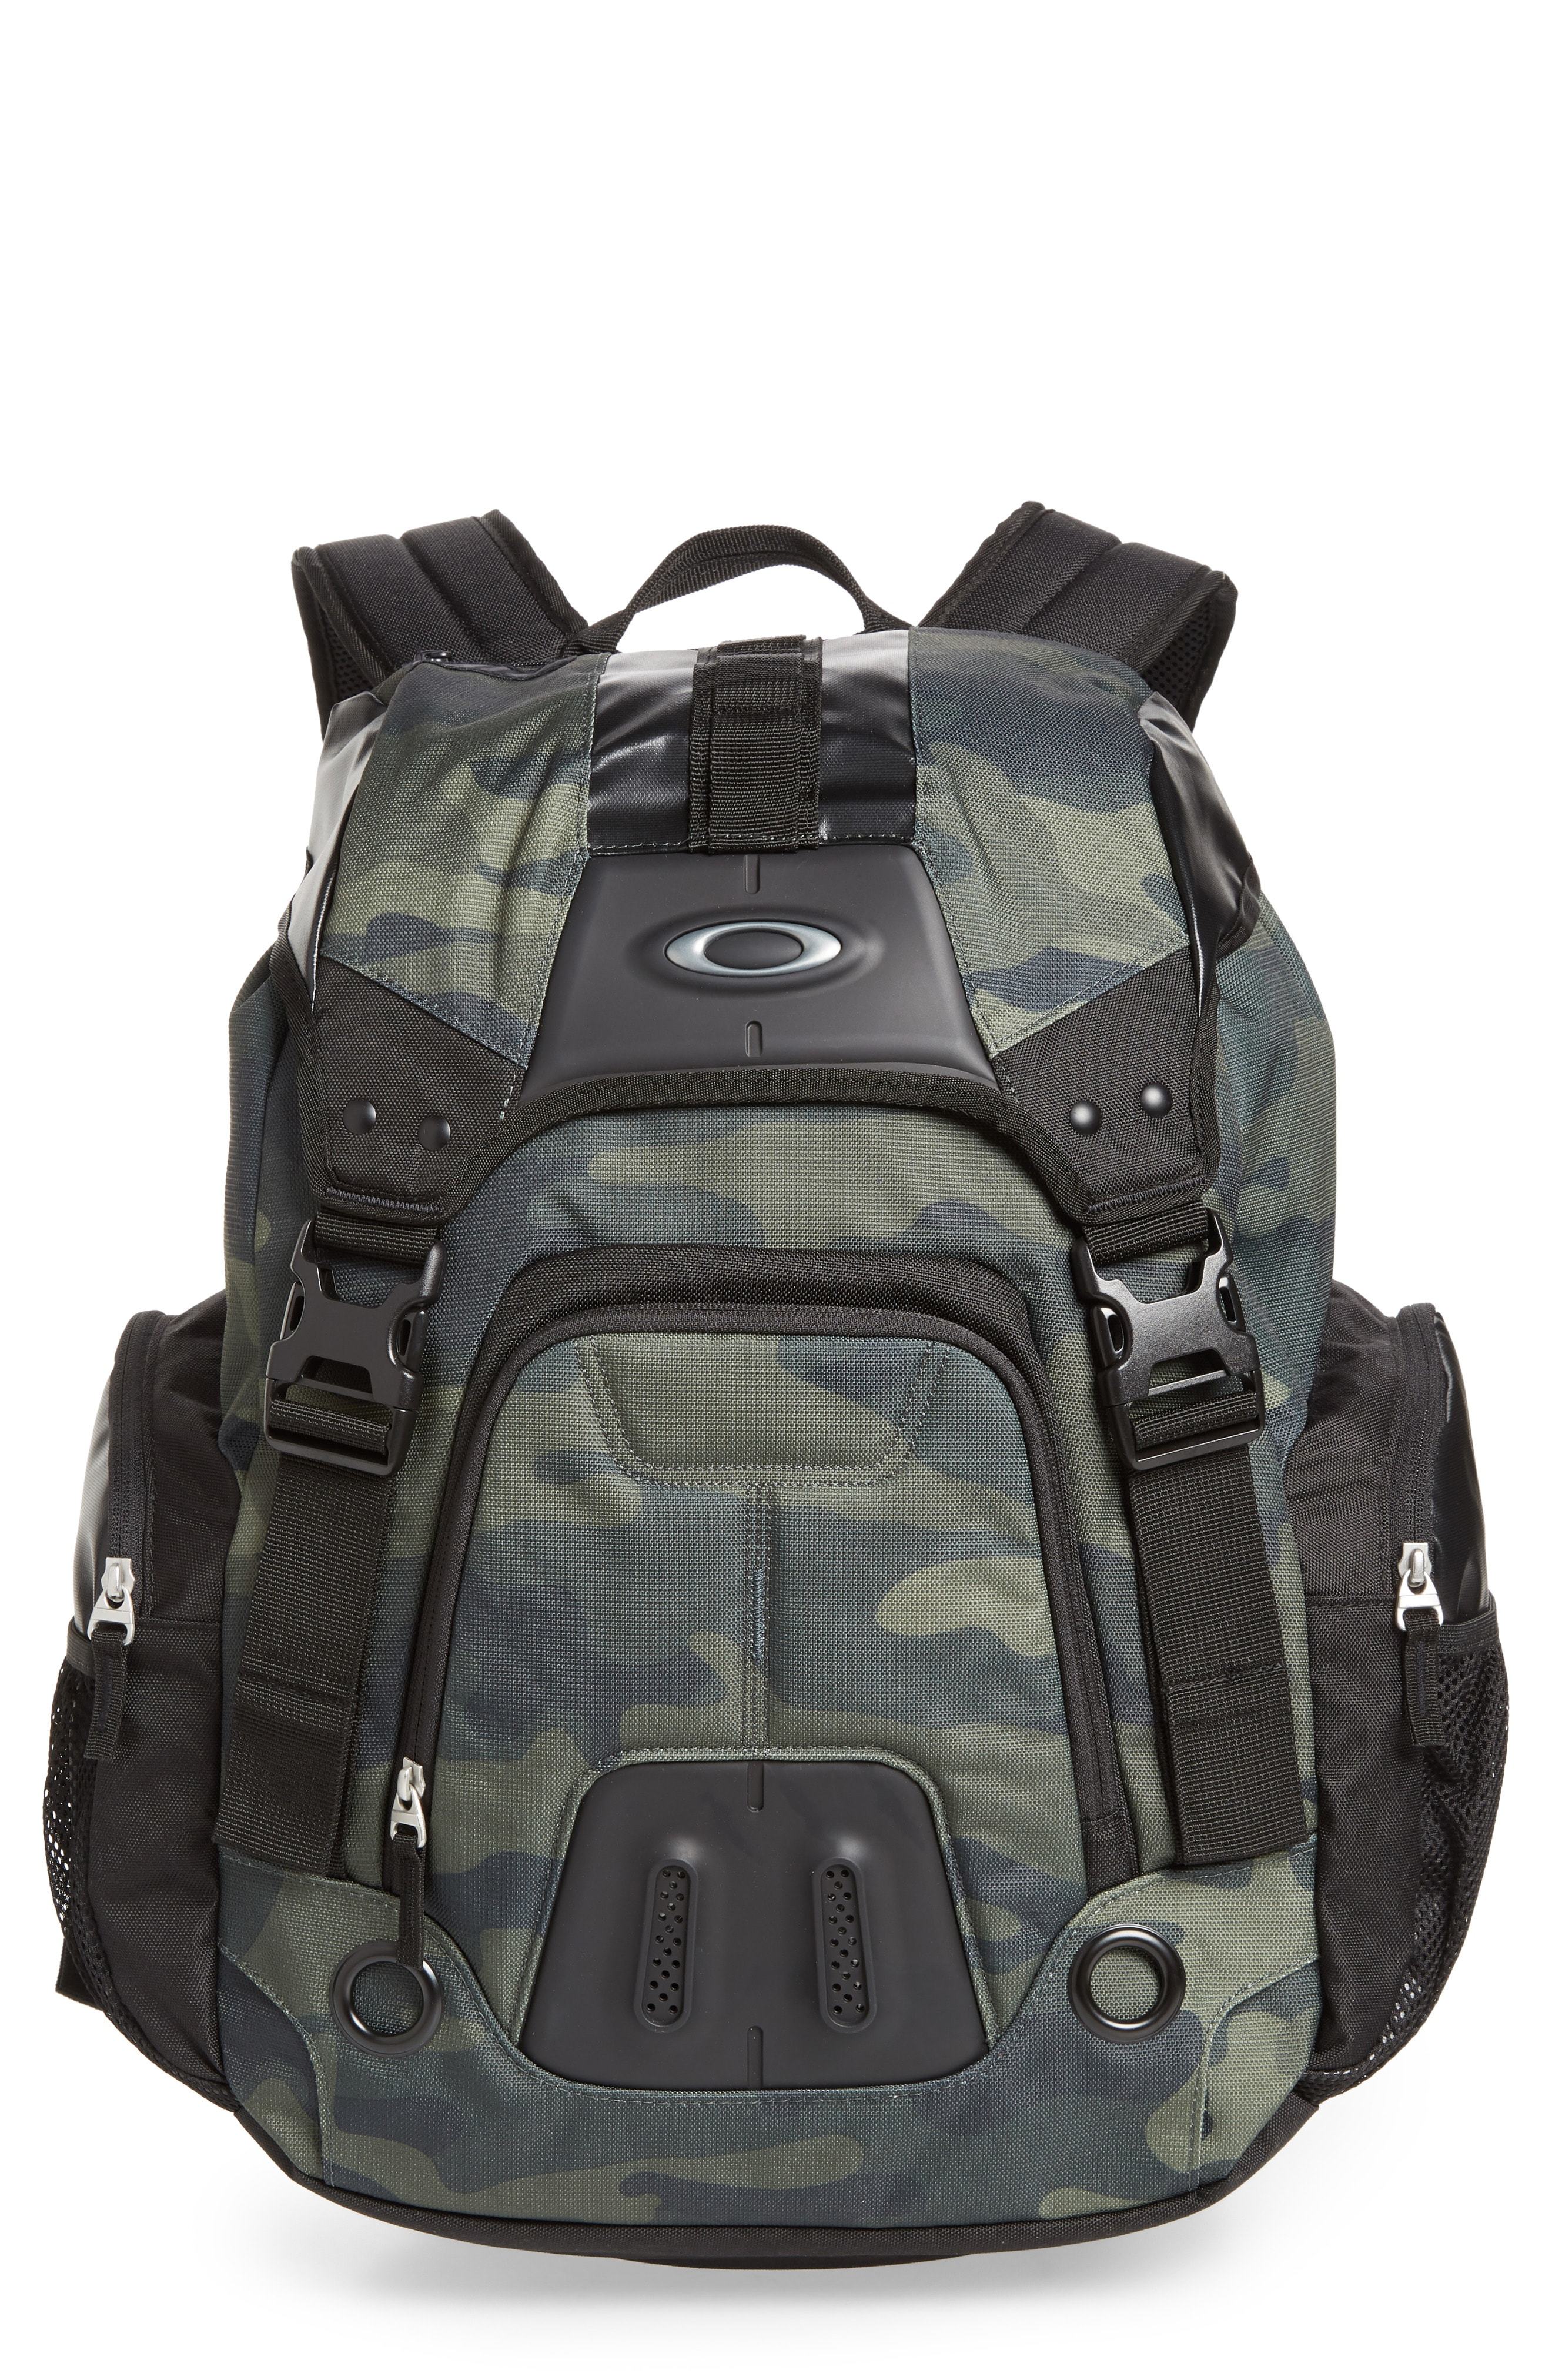 Oakley Gearbox Lx Backpack, $120 